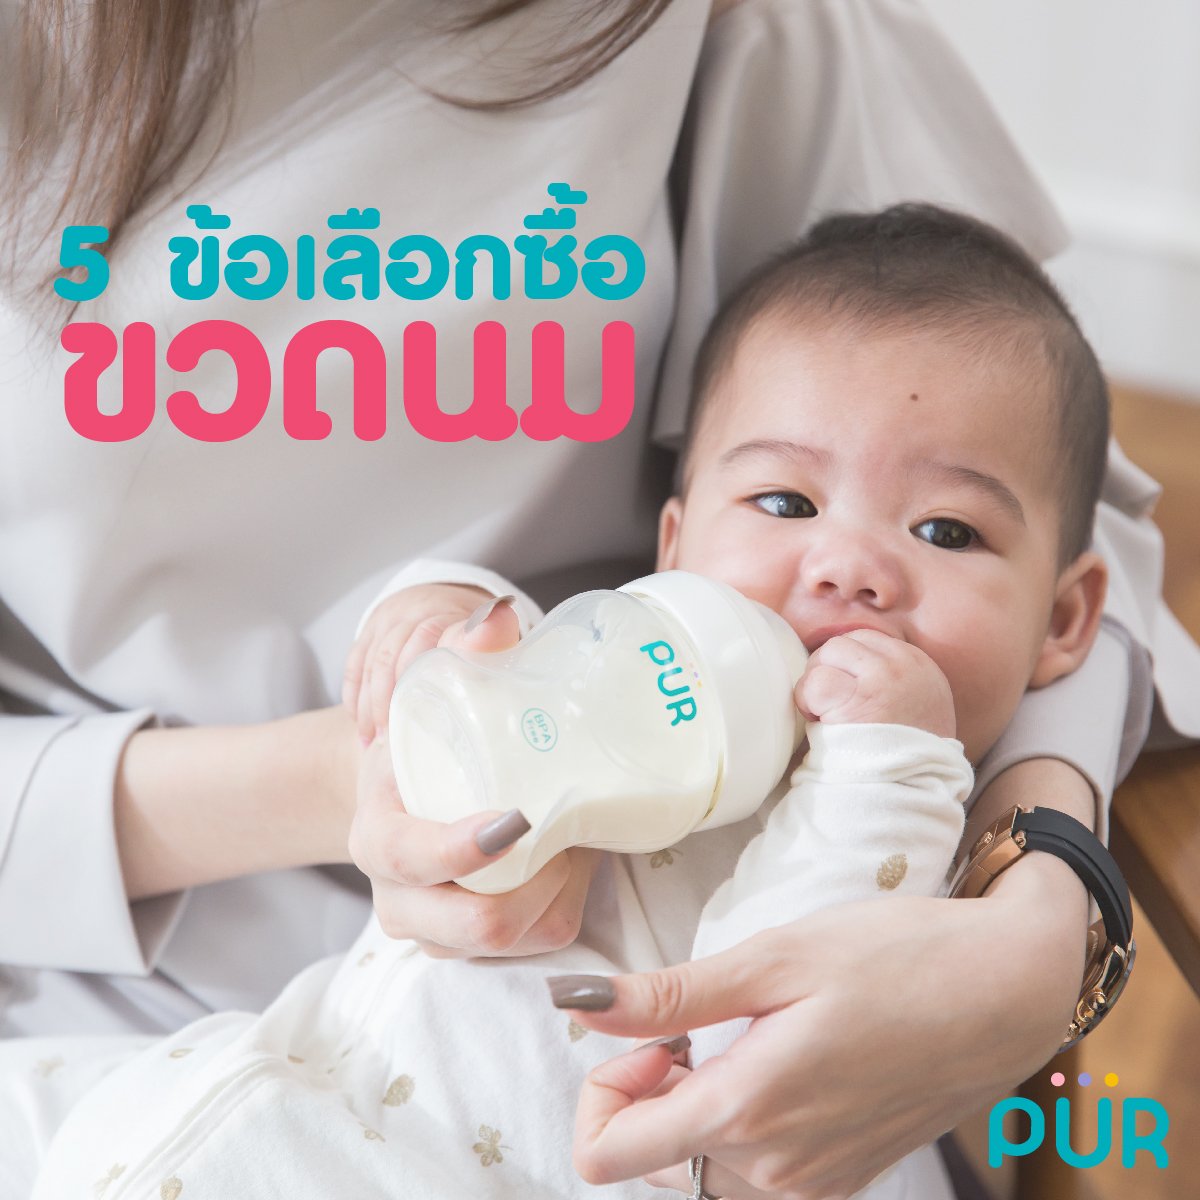 5 ข้อเลือกซื้อขวดนมให้ลูกน้อย - purthailand